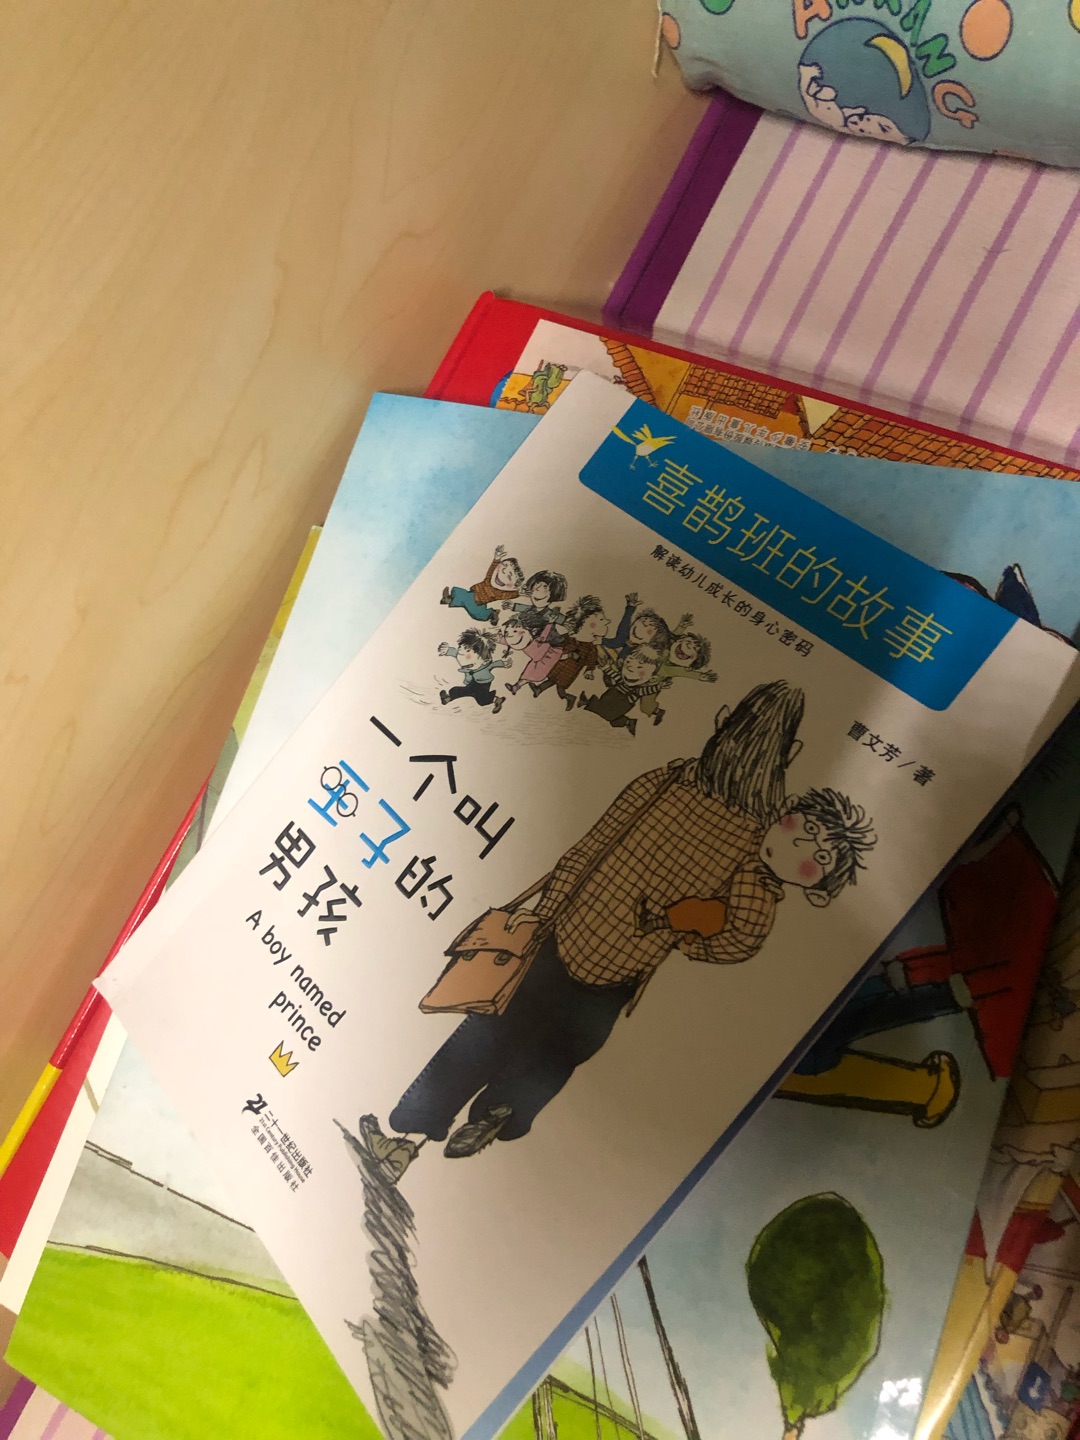 因为喜欢上米小圈，开始给孩子买类似的儿童小说，孩子说都能想像的出书里描述的画面，虽然讲的是幼儿园，一样看的津津有味